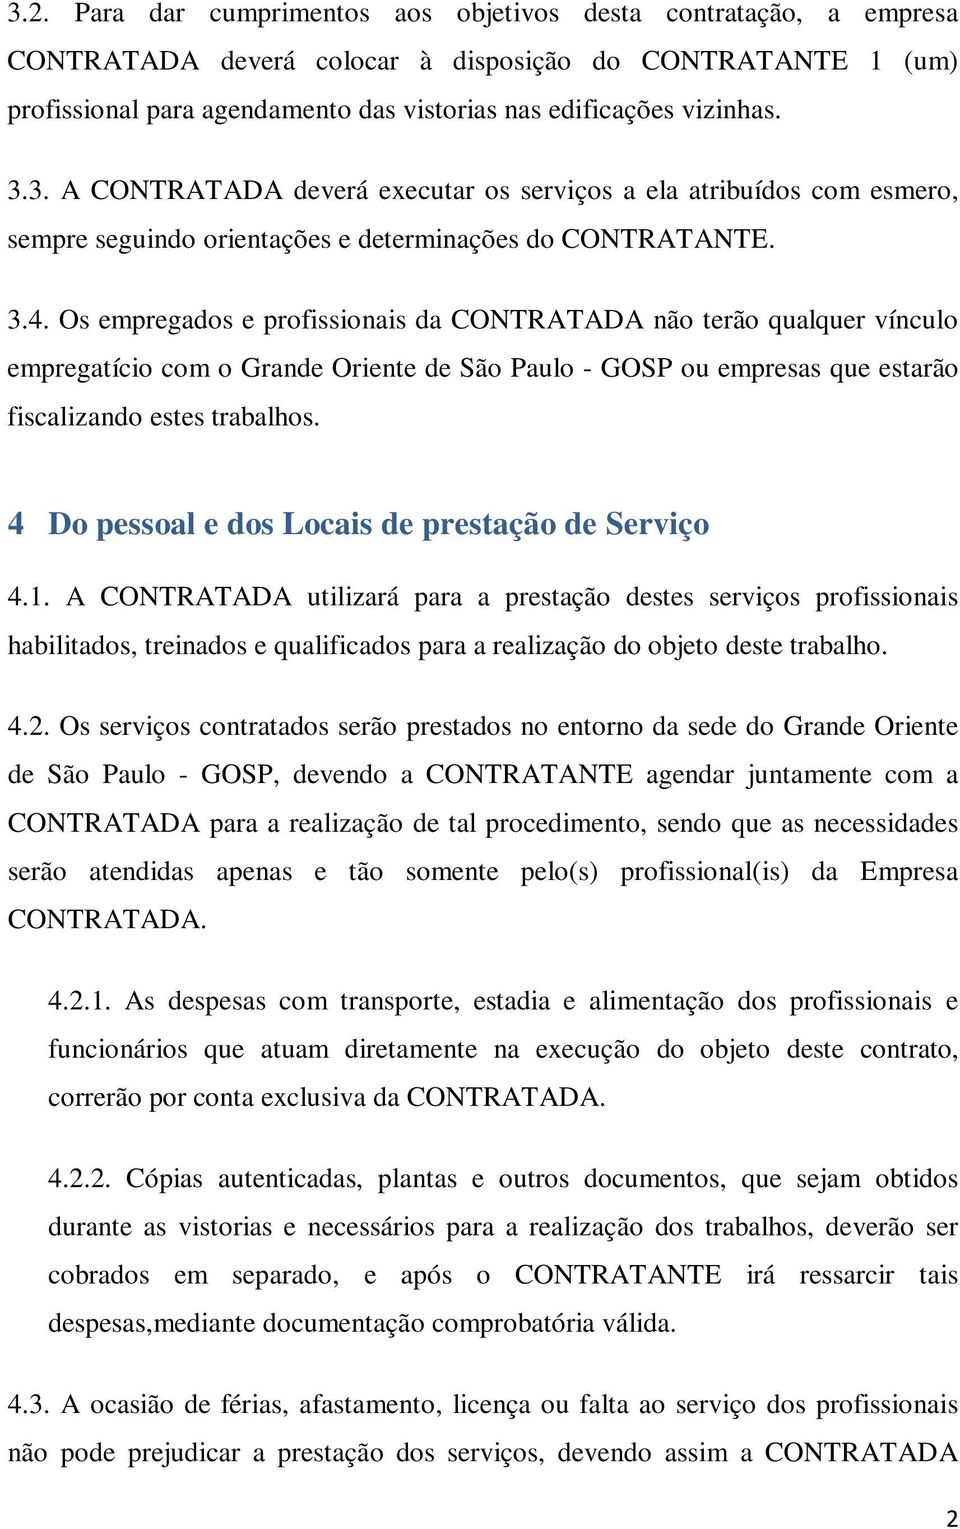 Os empregados e profissionais da CONTRATADA não terão qualquer vínculo empregatício com o Grande Oriente de São Paulo - GOSP ou empresas que estarão fiscalizando estes trabalhos.